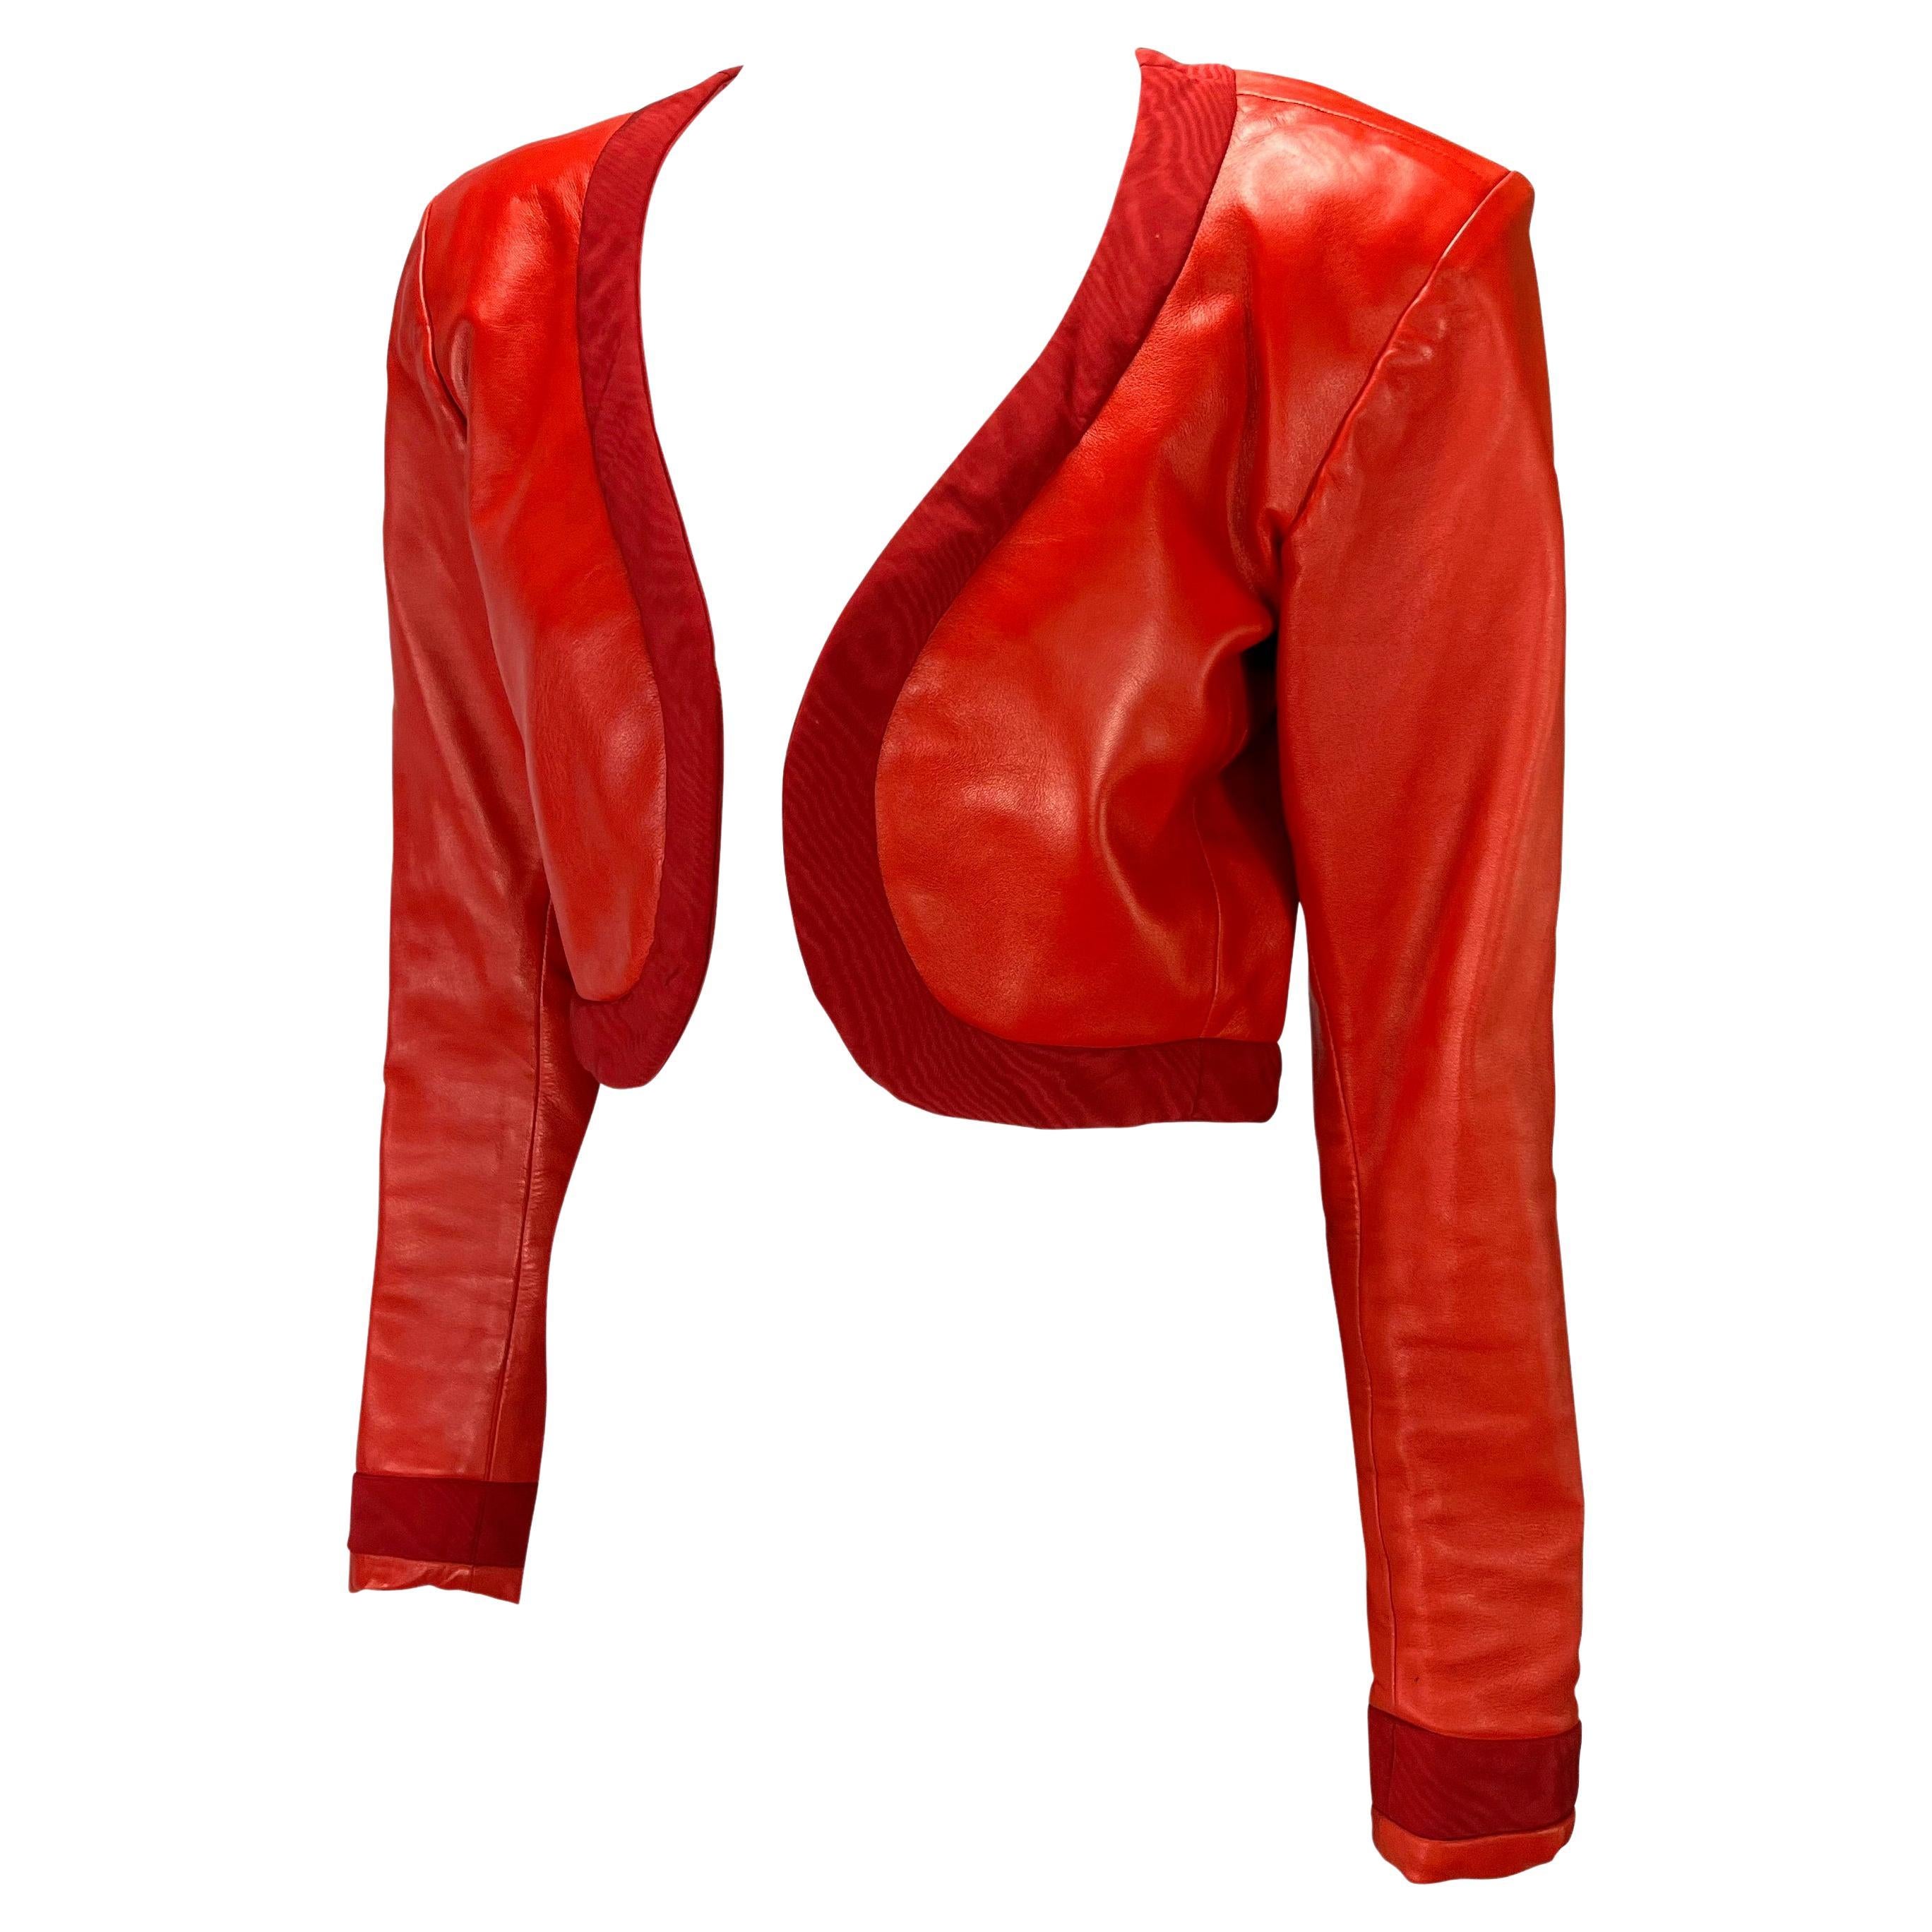 Présentation d'une veste en cuir rouge vif Yves Saint Laurent Rive Gauche, créée par Yves Saint Laurent. Issu de la collection printemps-été 1990, ce fabuleux boléro est presque entièrement en cuir et est complété par une large bordure autour du